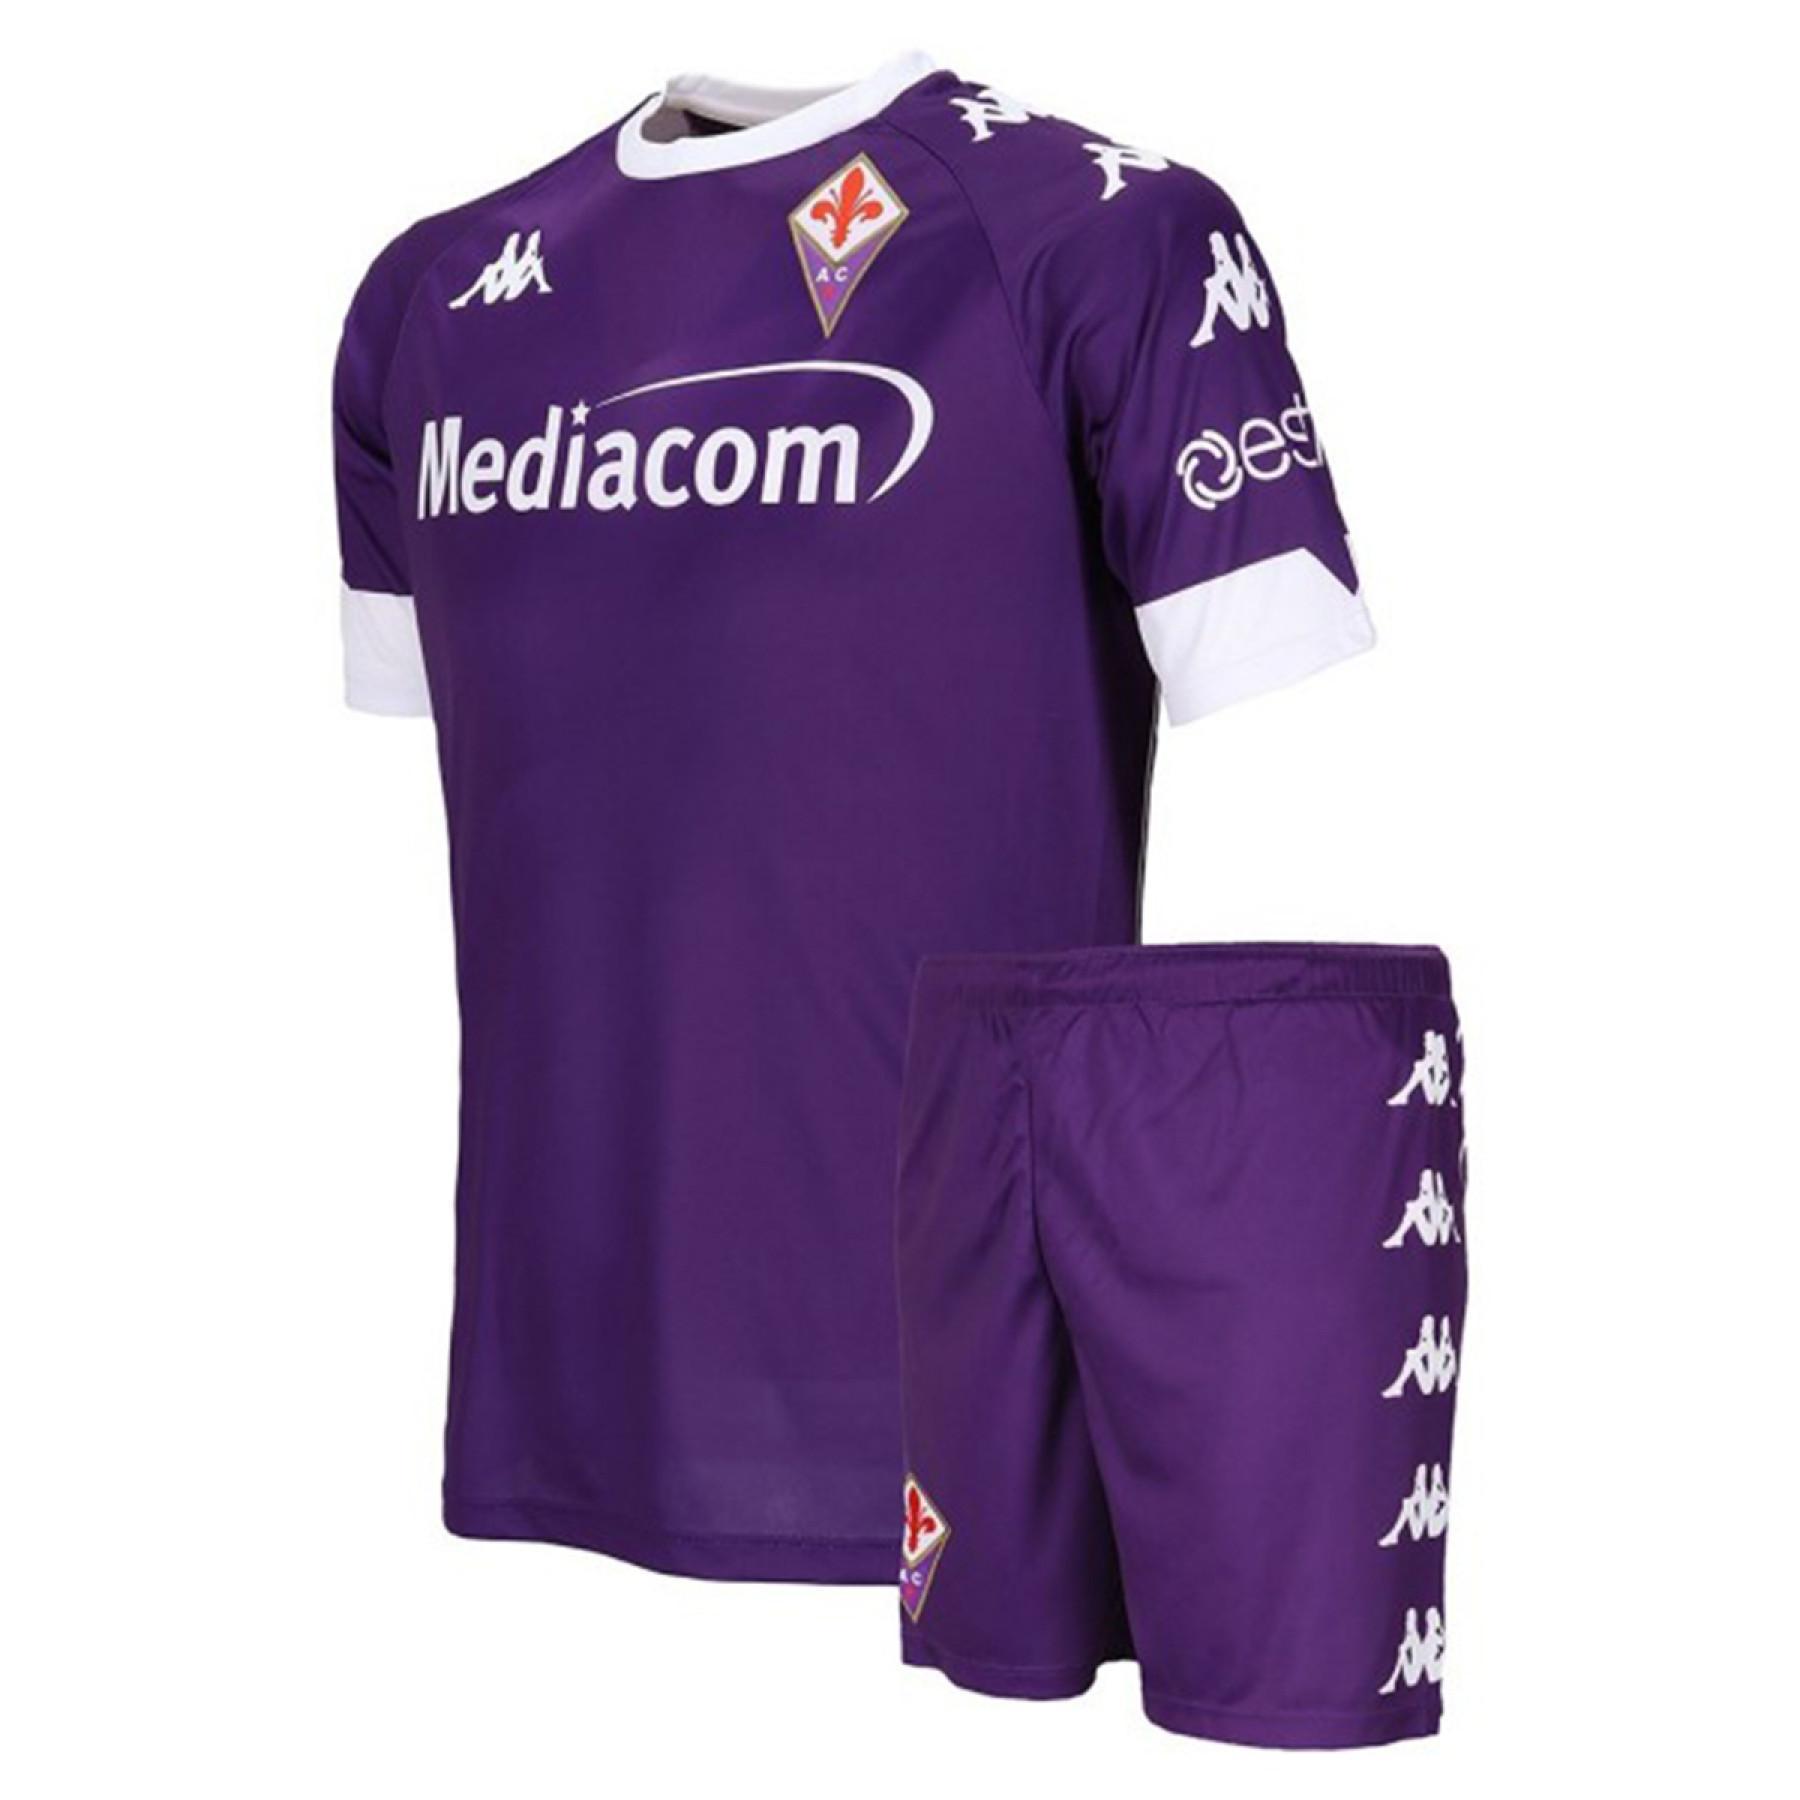 Home Kindpakket Fiorentina AC 2020/21